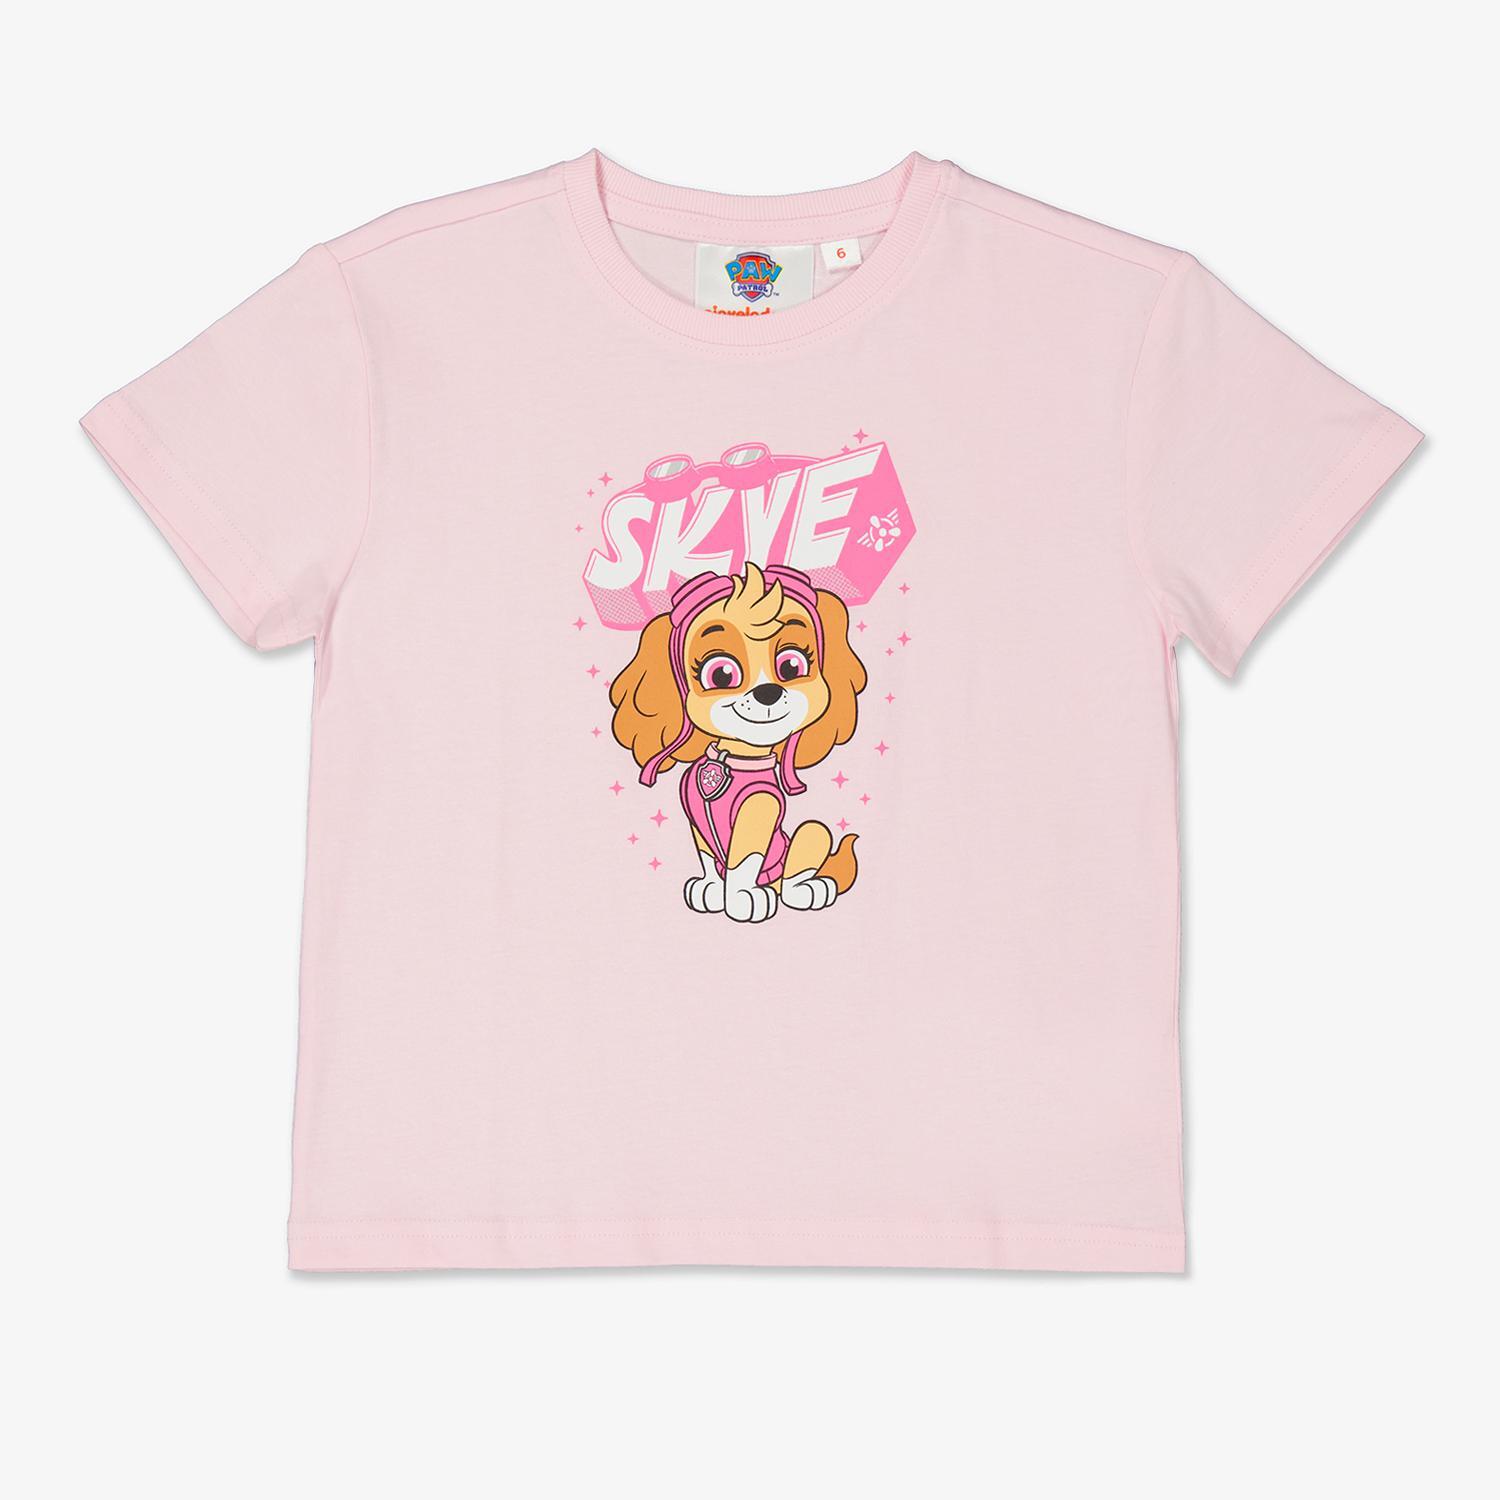 Patrulla Canina Girls Camiseta Everest T8